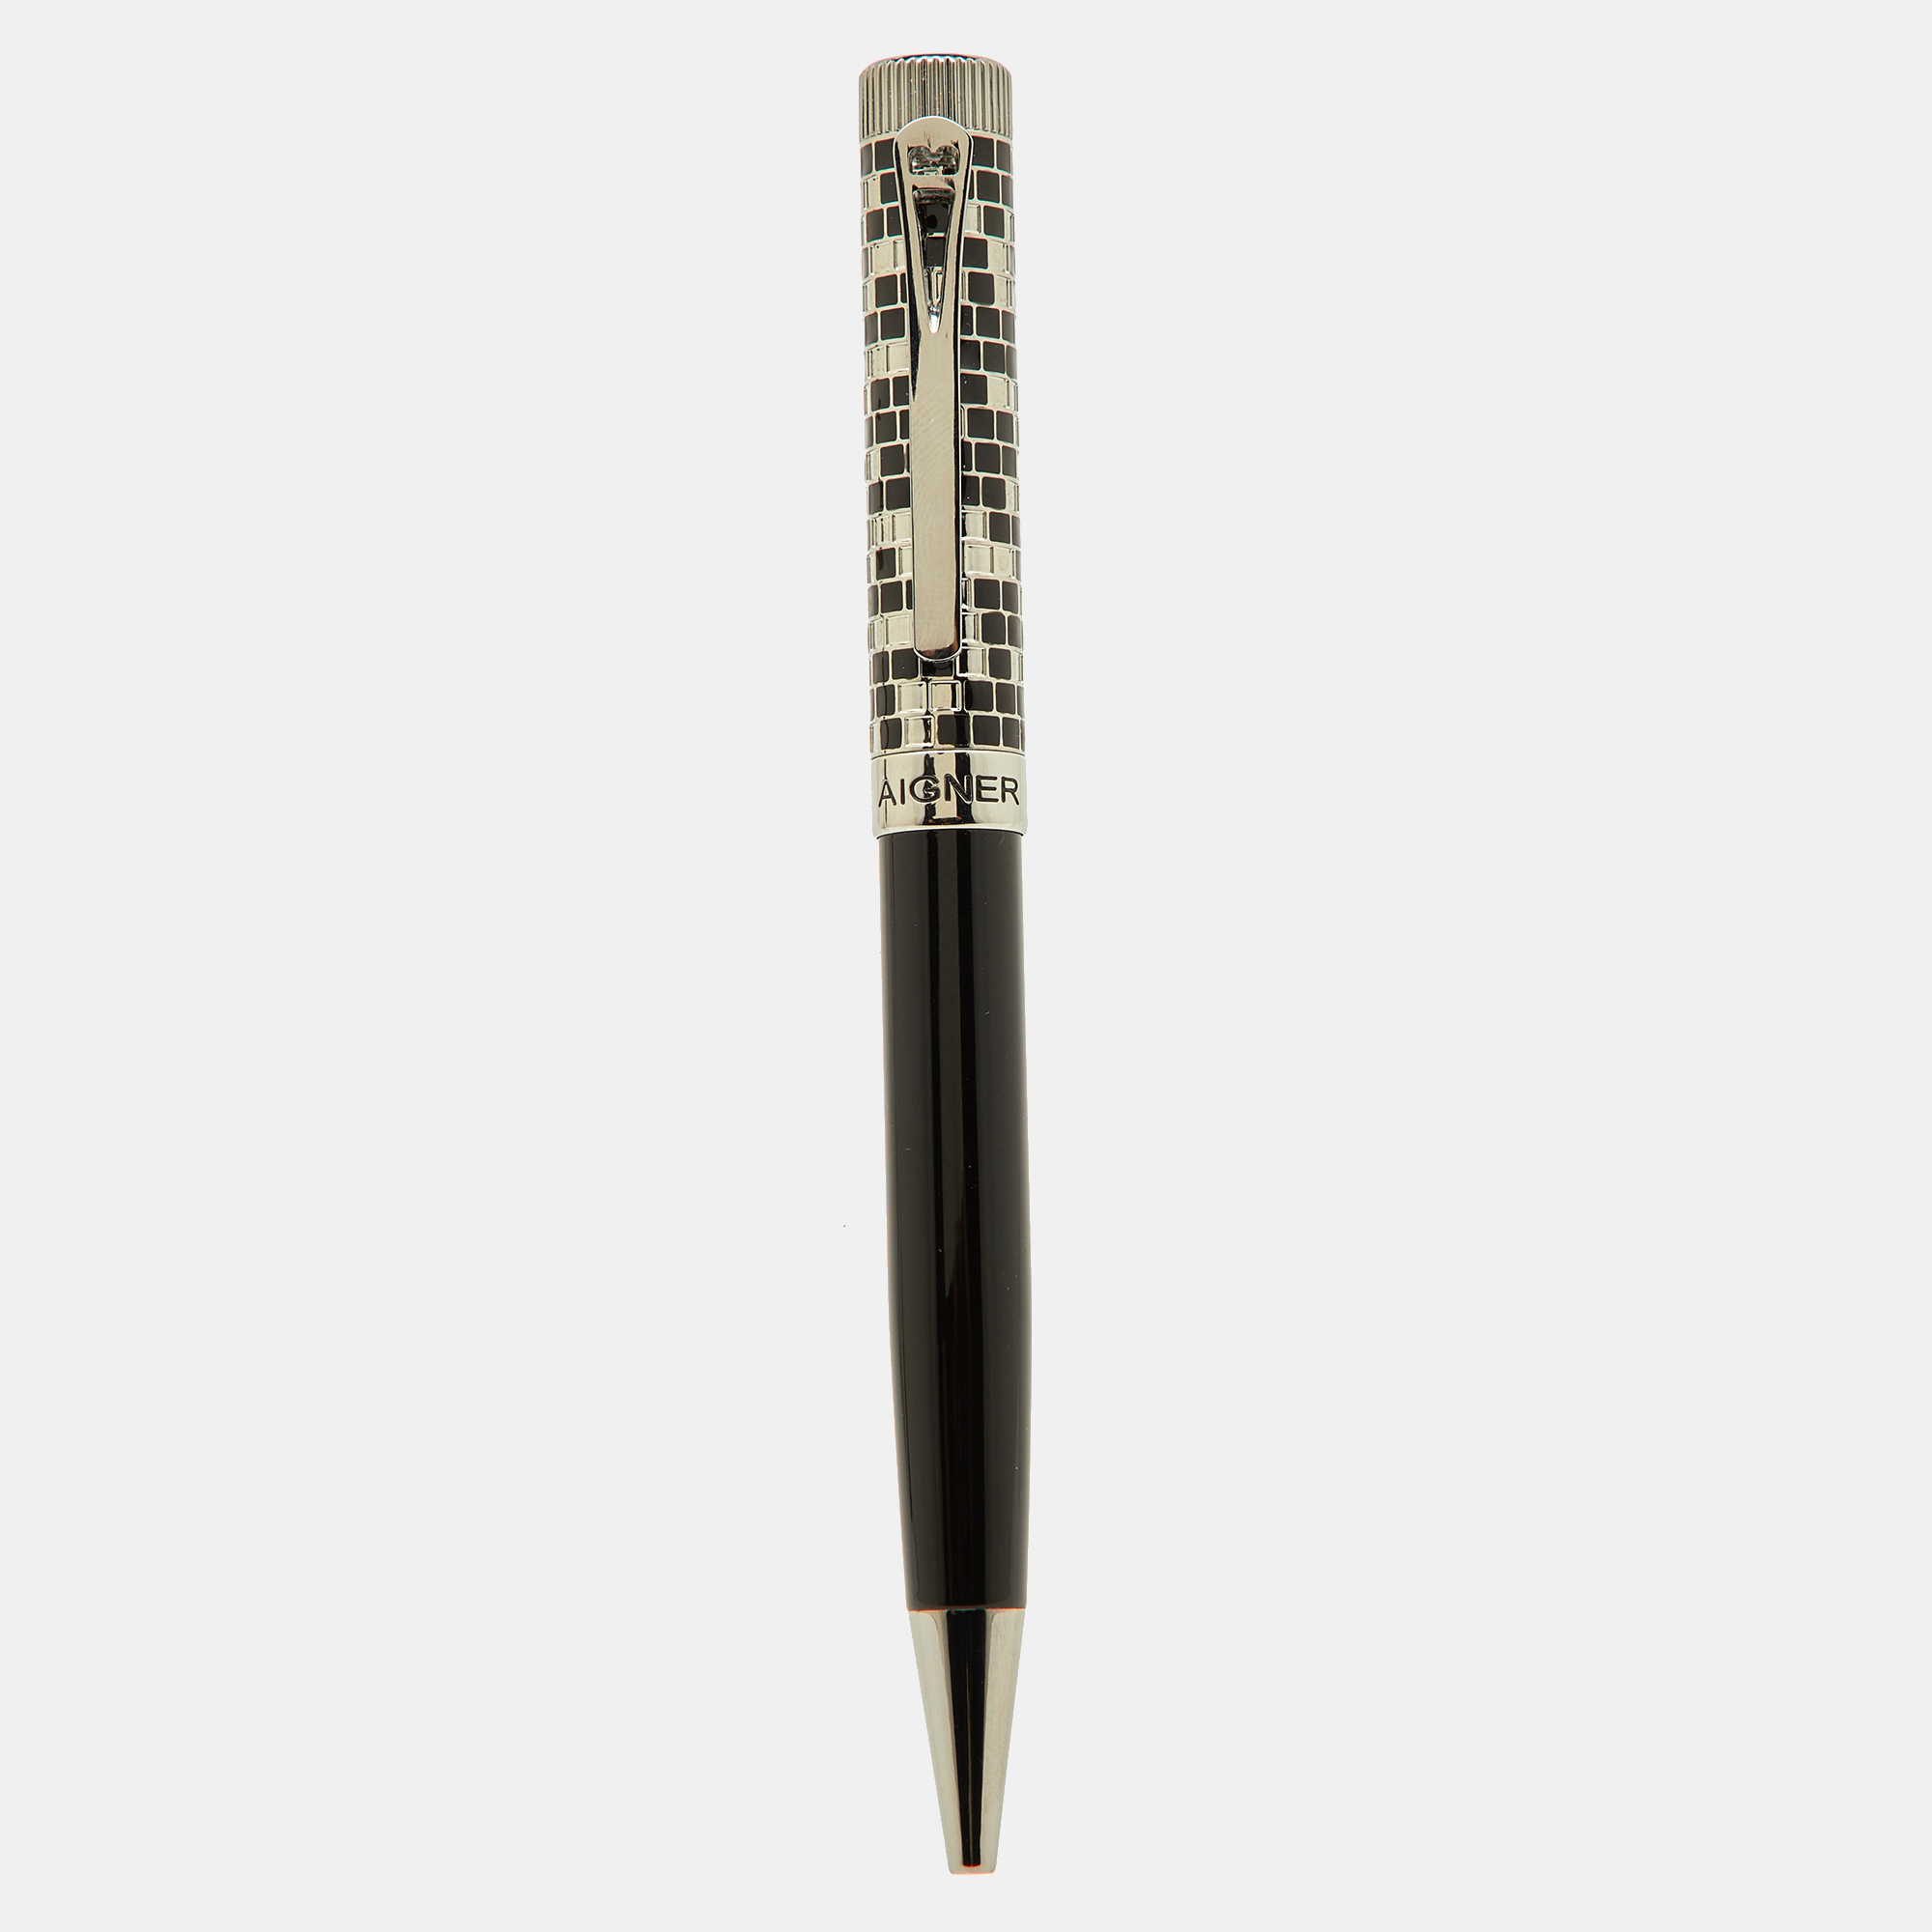 

Aigner Leone Checkered Black Composite Silver Tone Ballpoint Pen